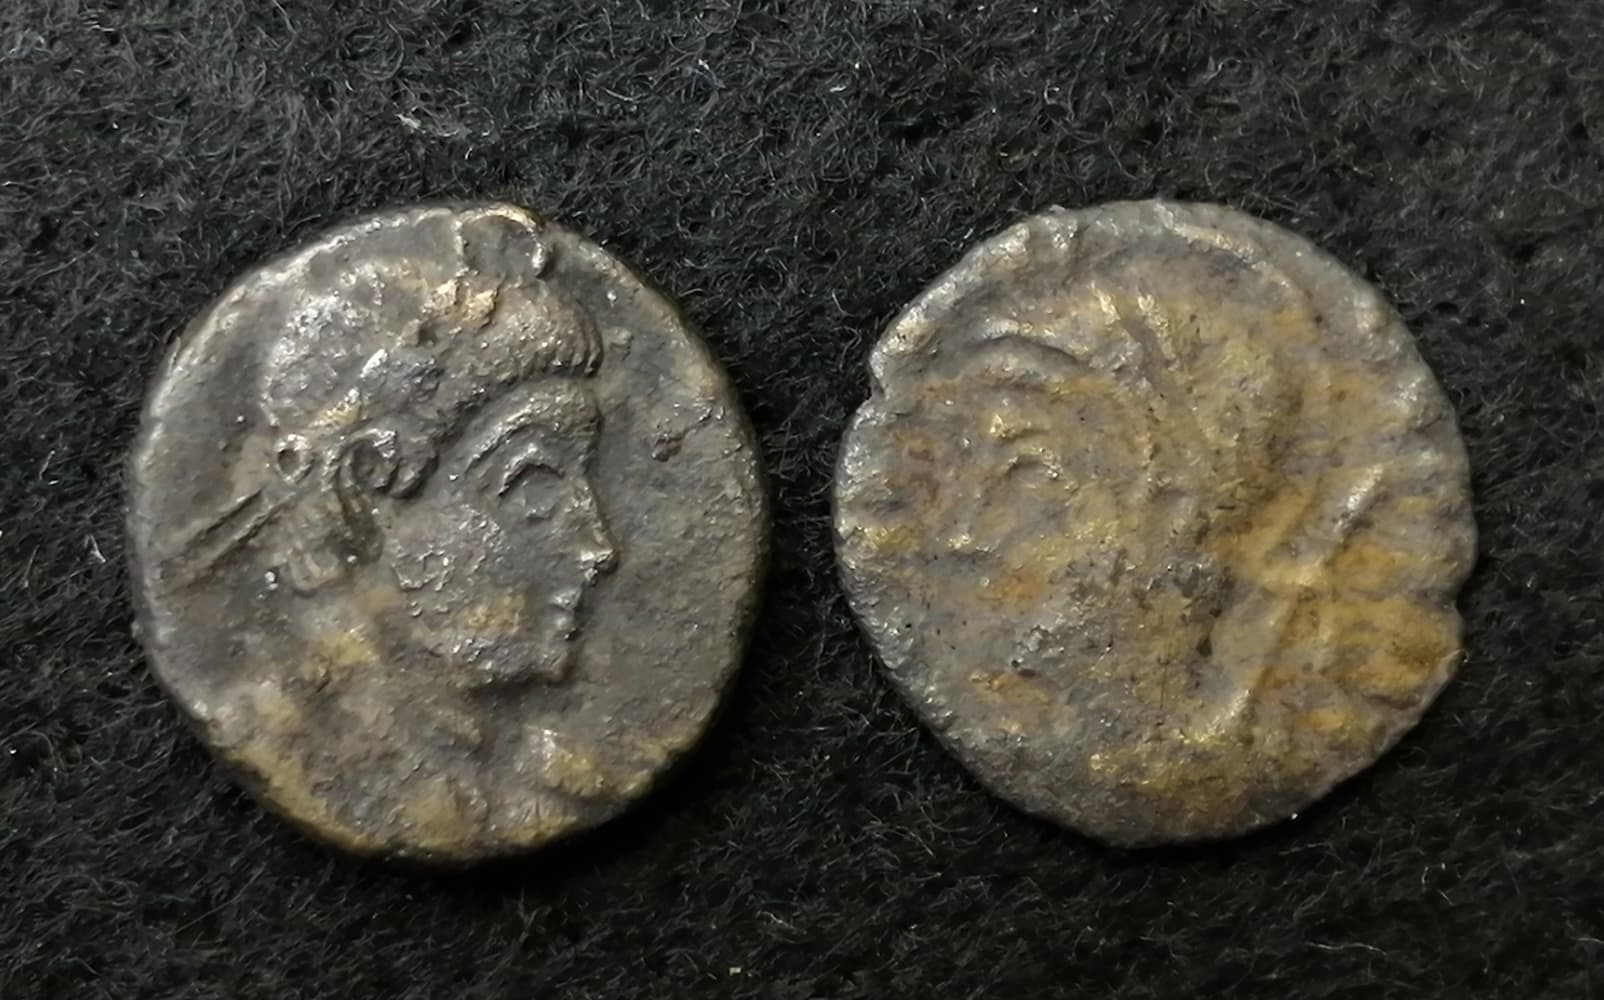 Roman coins approx 10mm diameter